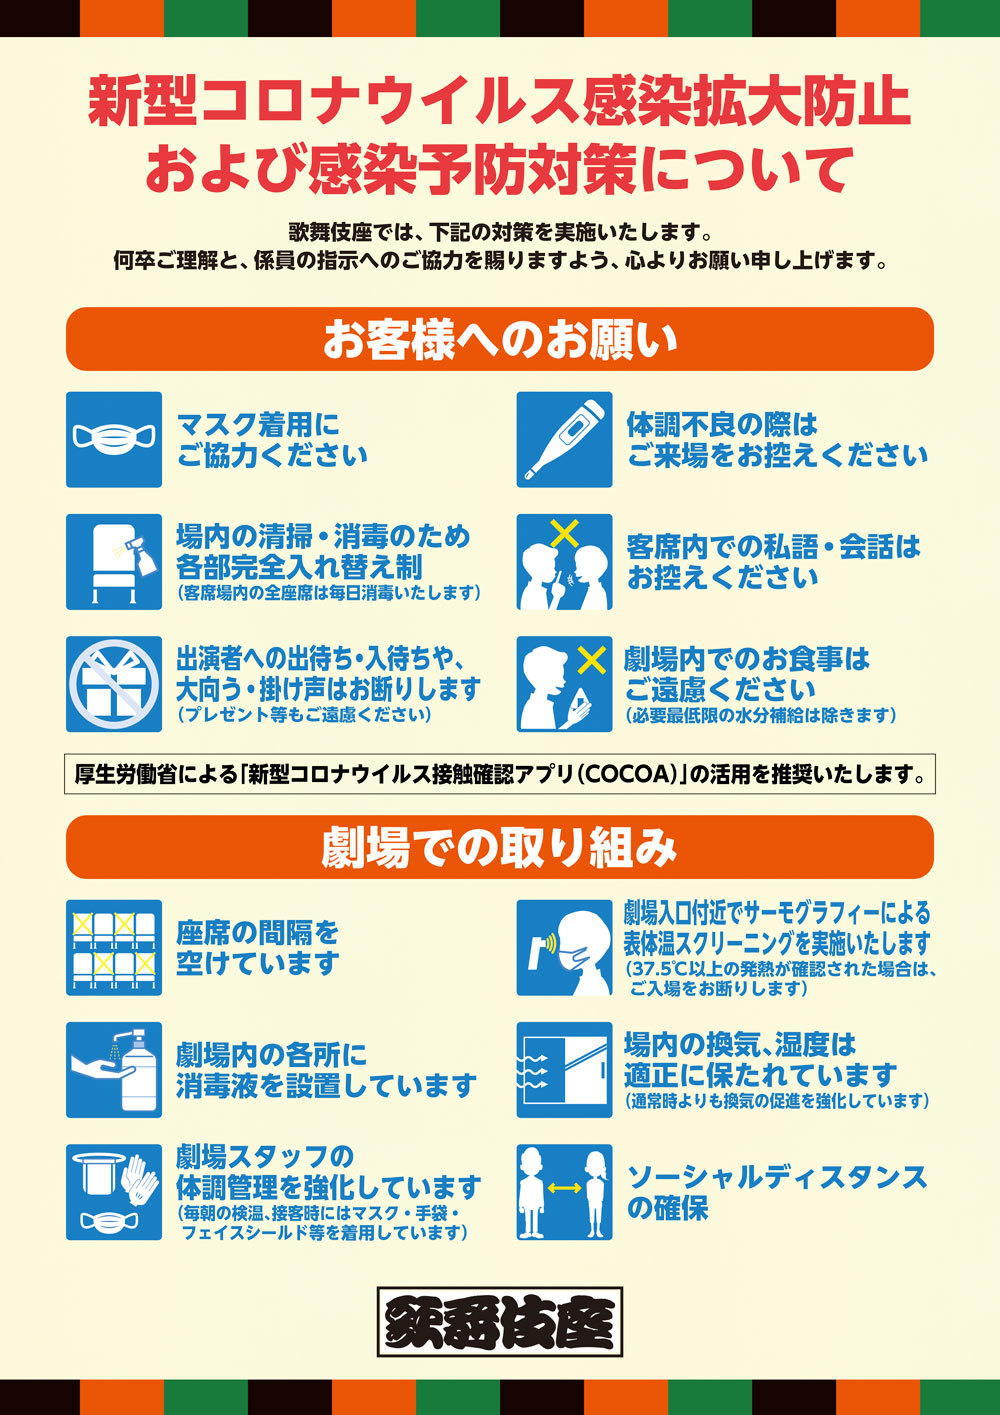 歌舞伎座公演再開ならびに新型コロナウイルス感染拡大防止および感染予防対策について